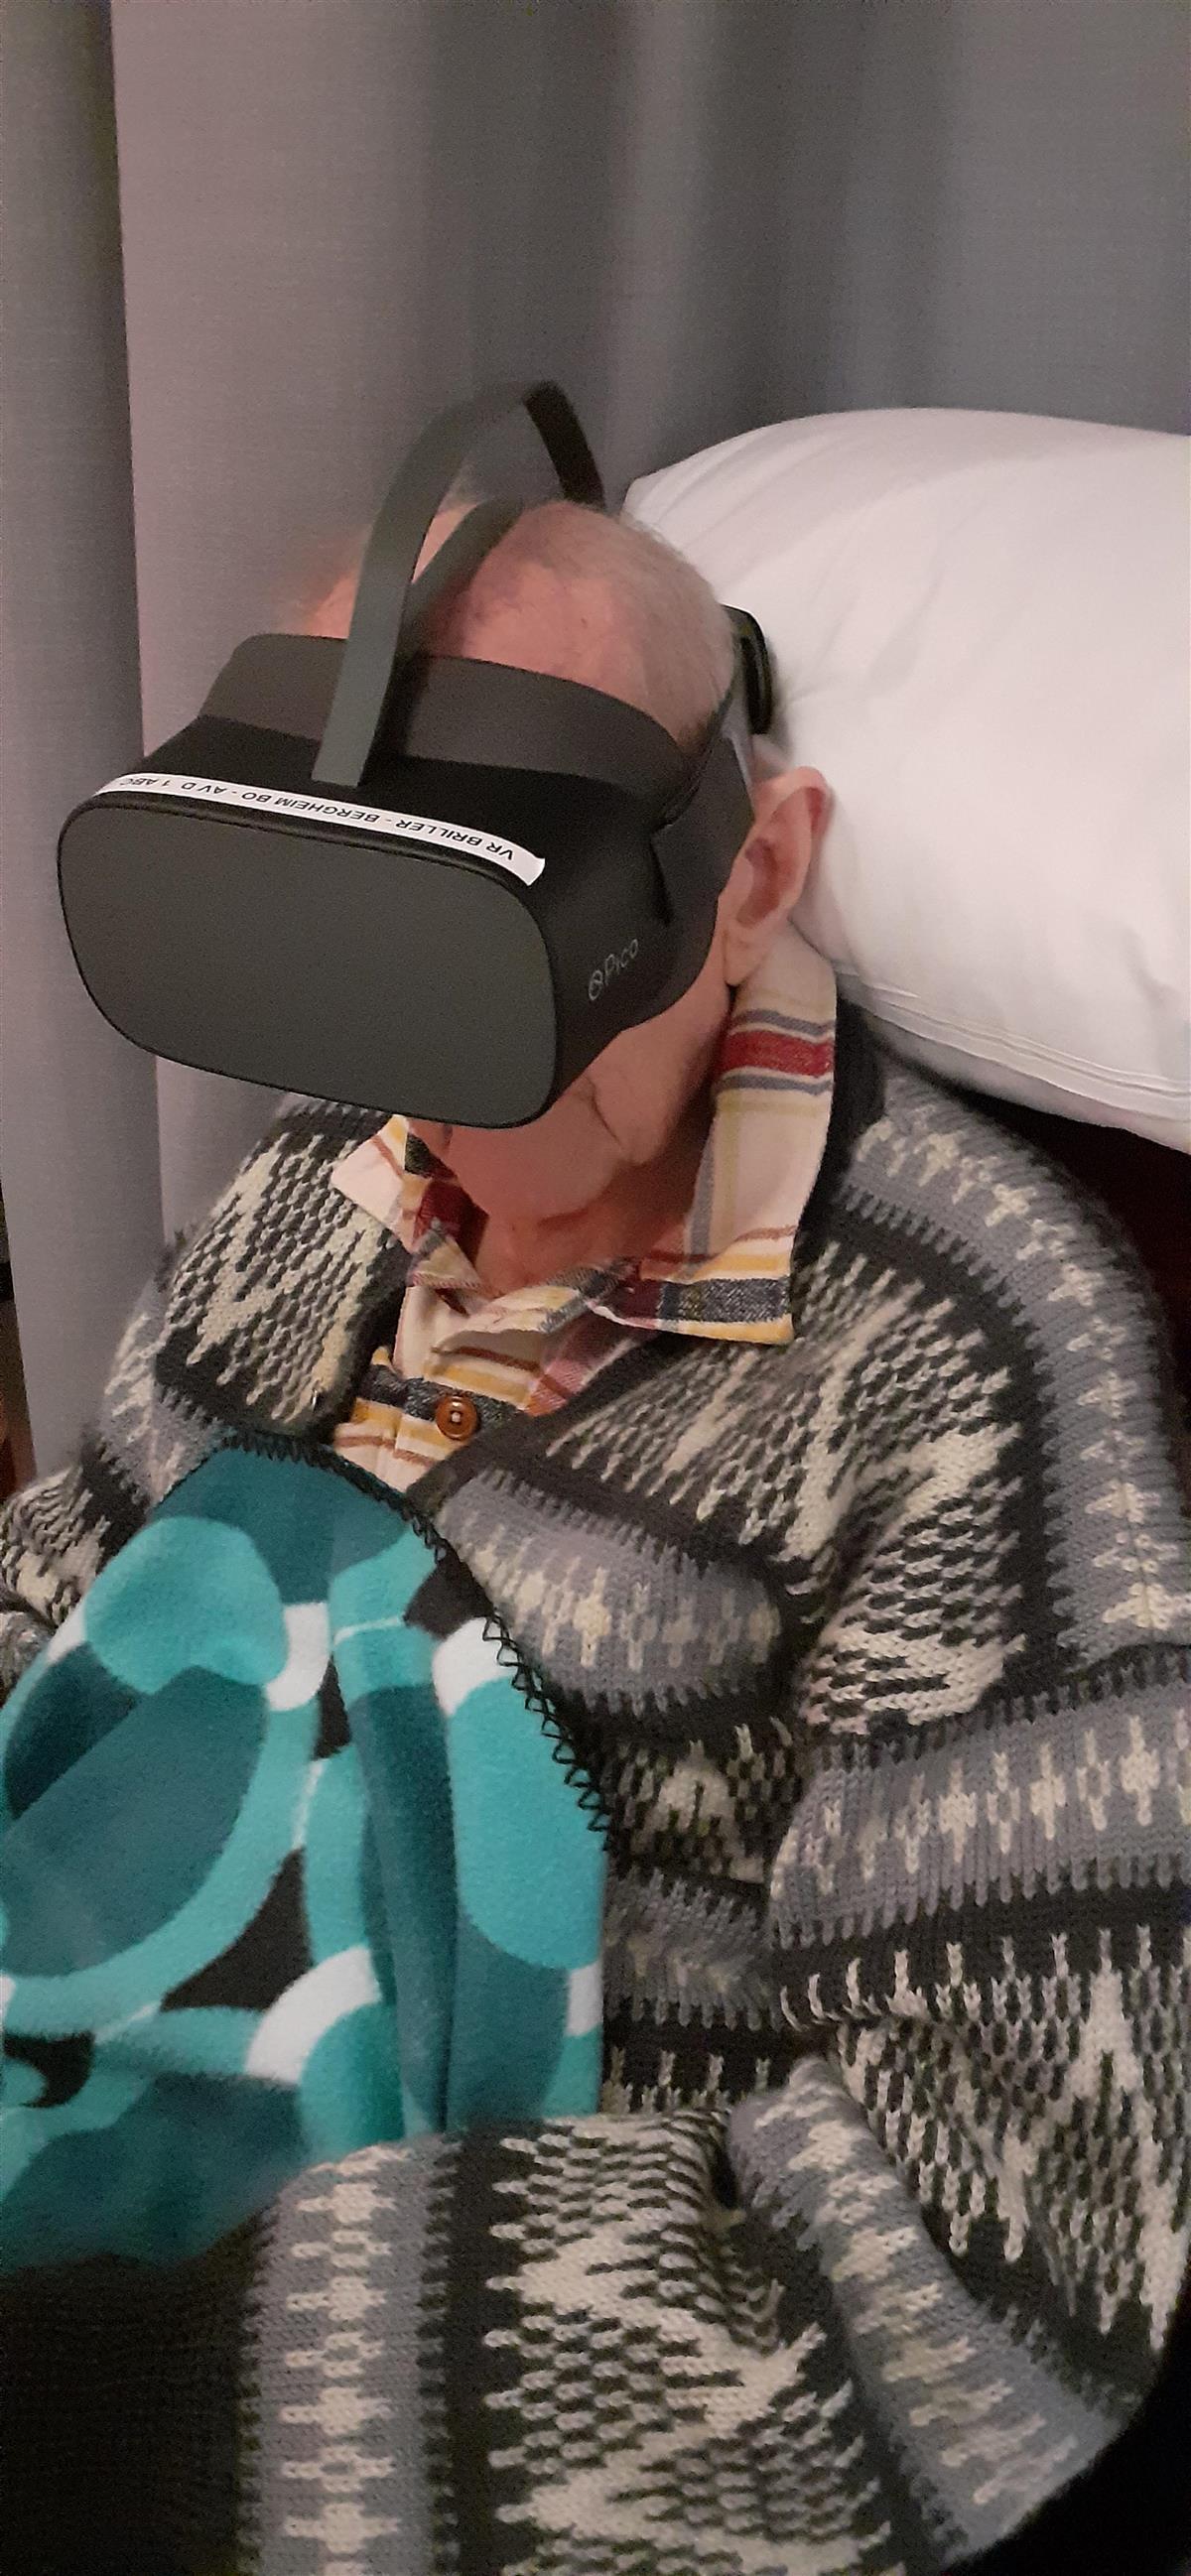 Beboer på Bergheim prøver VR briller. - Klikk for stort bilde